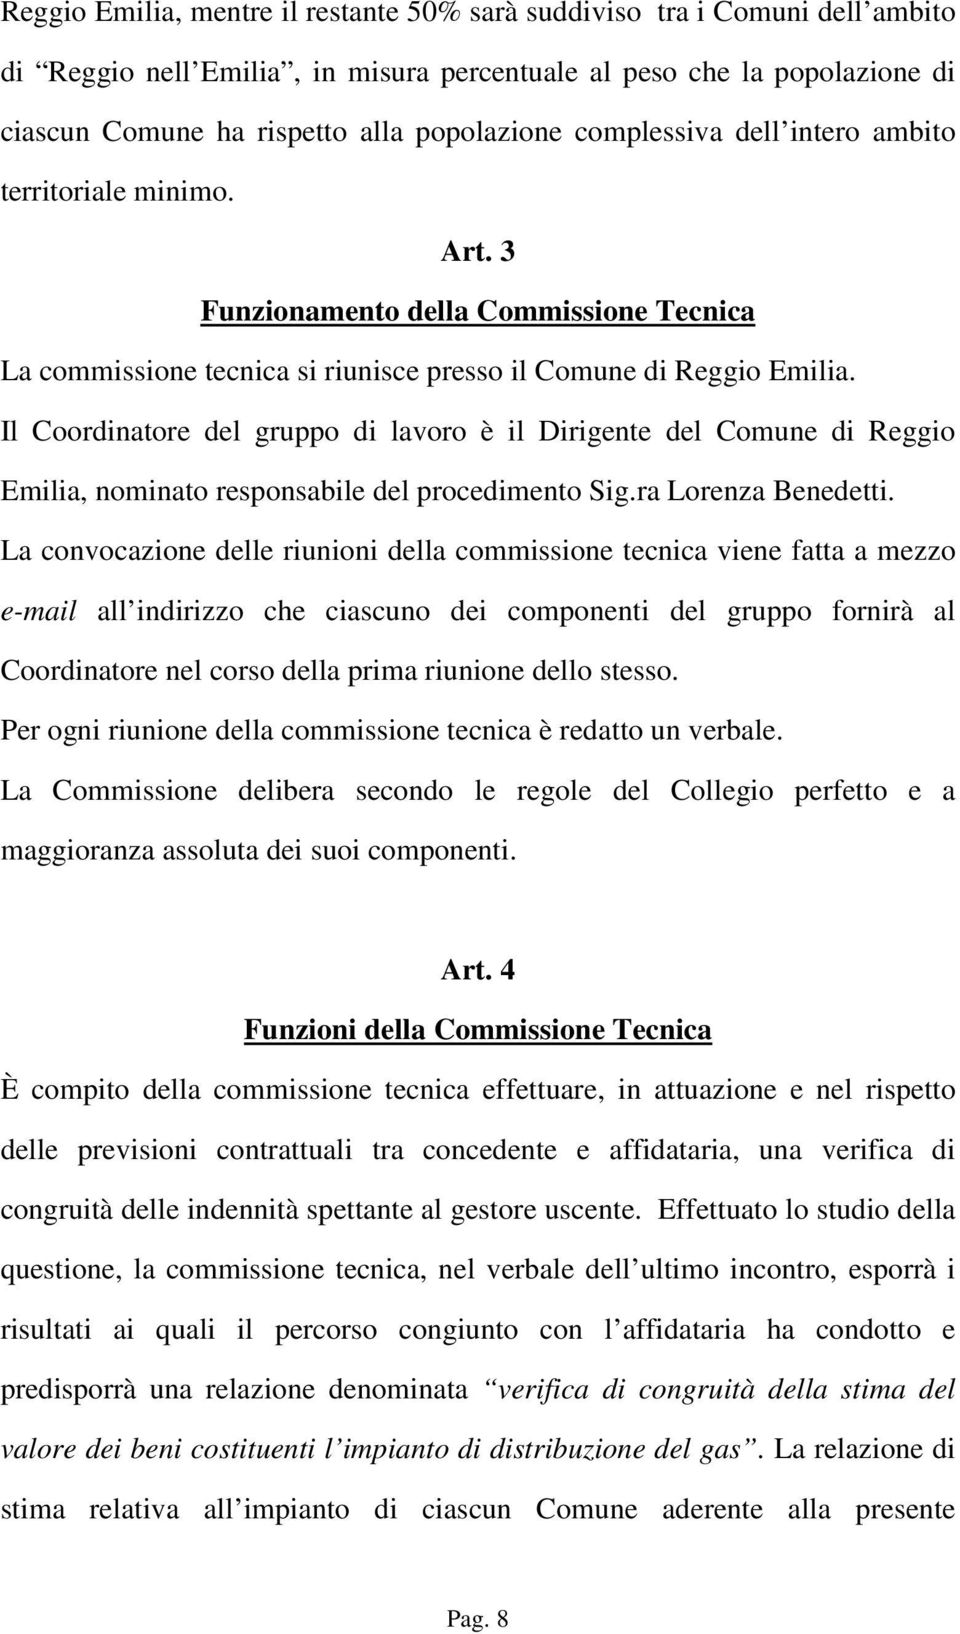 Il Coordinatore del gruppo di lavoro è il Dirigente del Comune di Reggio Emilia, nominato responsabile del procedimento Sig.ra Lorenza Benedetti.